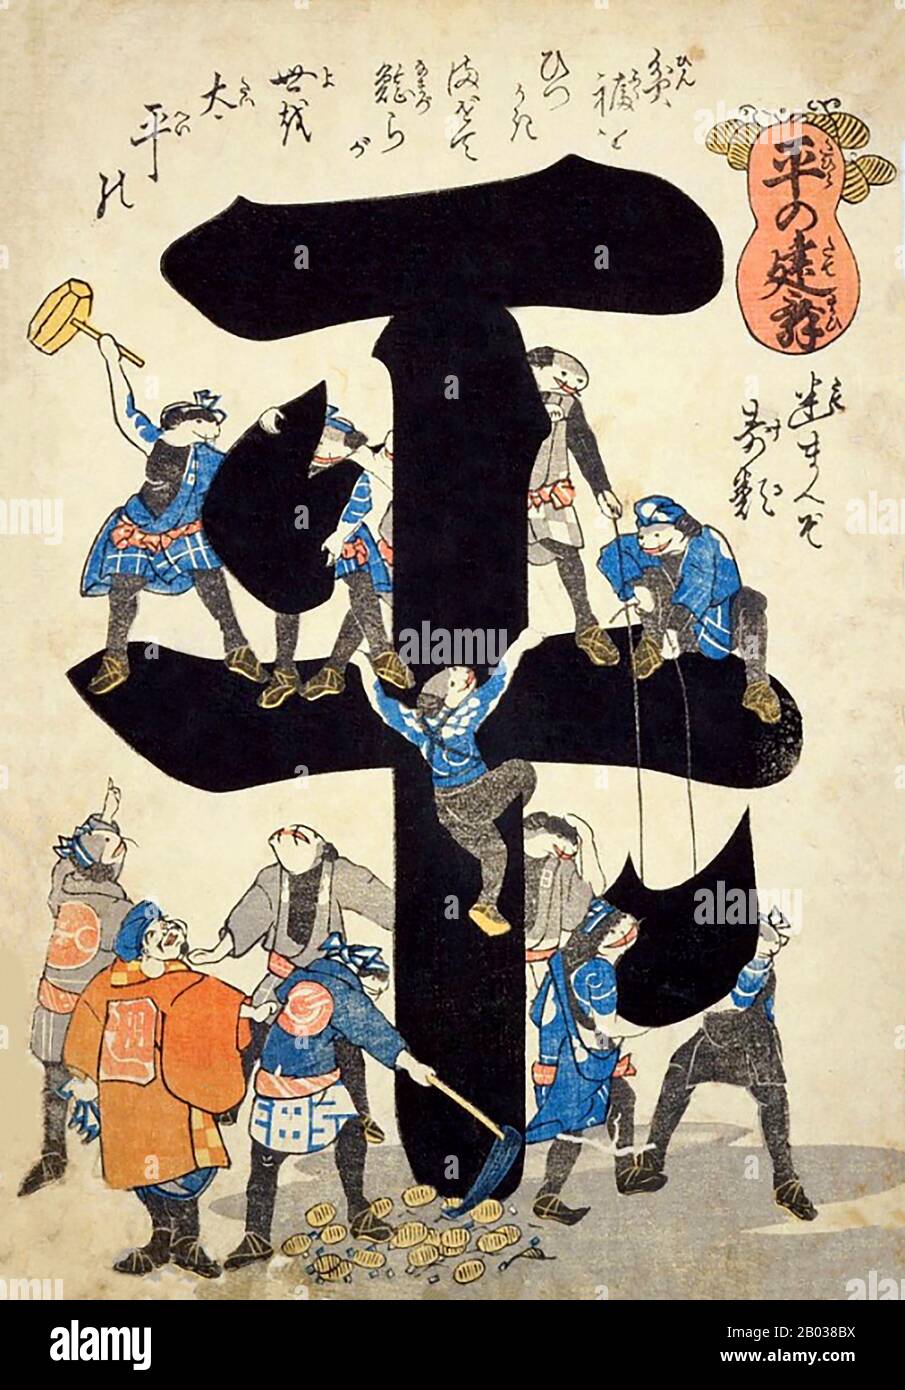 Il Namazu, chiamato anche l'Onamazu, è una creatura della mitologia giapponese e racconti. Il Namazu è un gigantesco pesce gatto che si dice causare terremoti e tremori. Vivendo nel fango sotto le isole giapponesi, il Namazu è custodito dal dio protettore Kashima, che trattiene il pesce gatto utilizzando la roccia kaname-ishi. Quando Kashima lascia giù la sua guardia, Namazu si spascia e provoca violenti terremoti. Il Namazu divenne famoso e popolare dopo i grandi terremoti di Ansei che accadde nei pressi di Edo nel 1855. Ciò ha condotto al Nasamu che è adorato come un dio della rettifica del mondo (yonaoshi daimyo Foto Stock